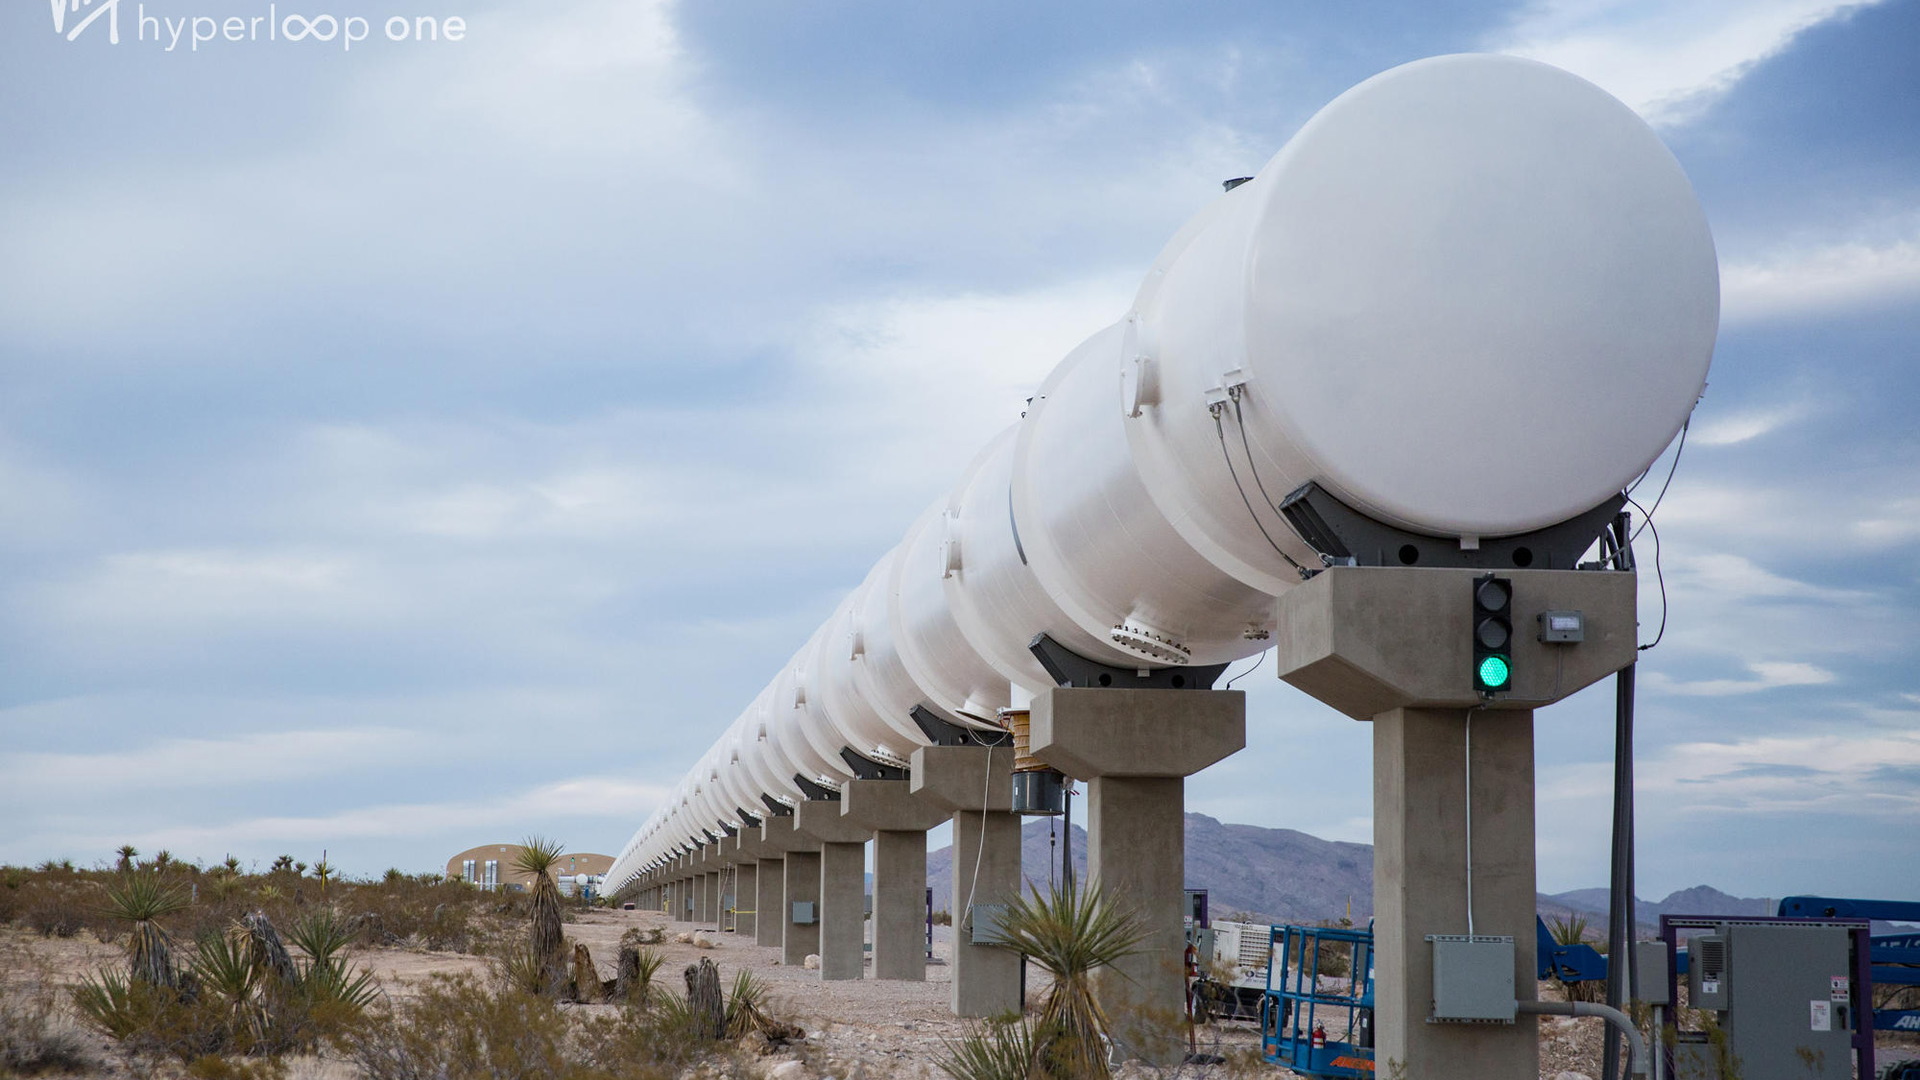 Virgin Hyperloop One test track in Nevada